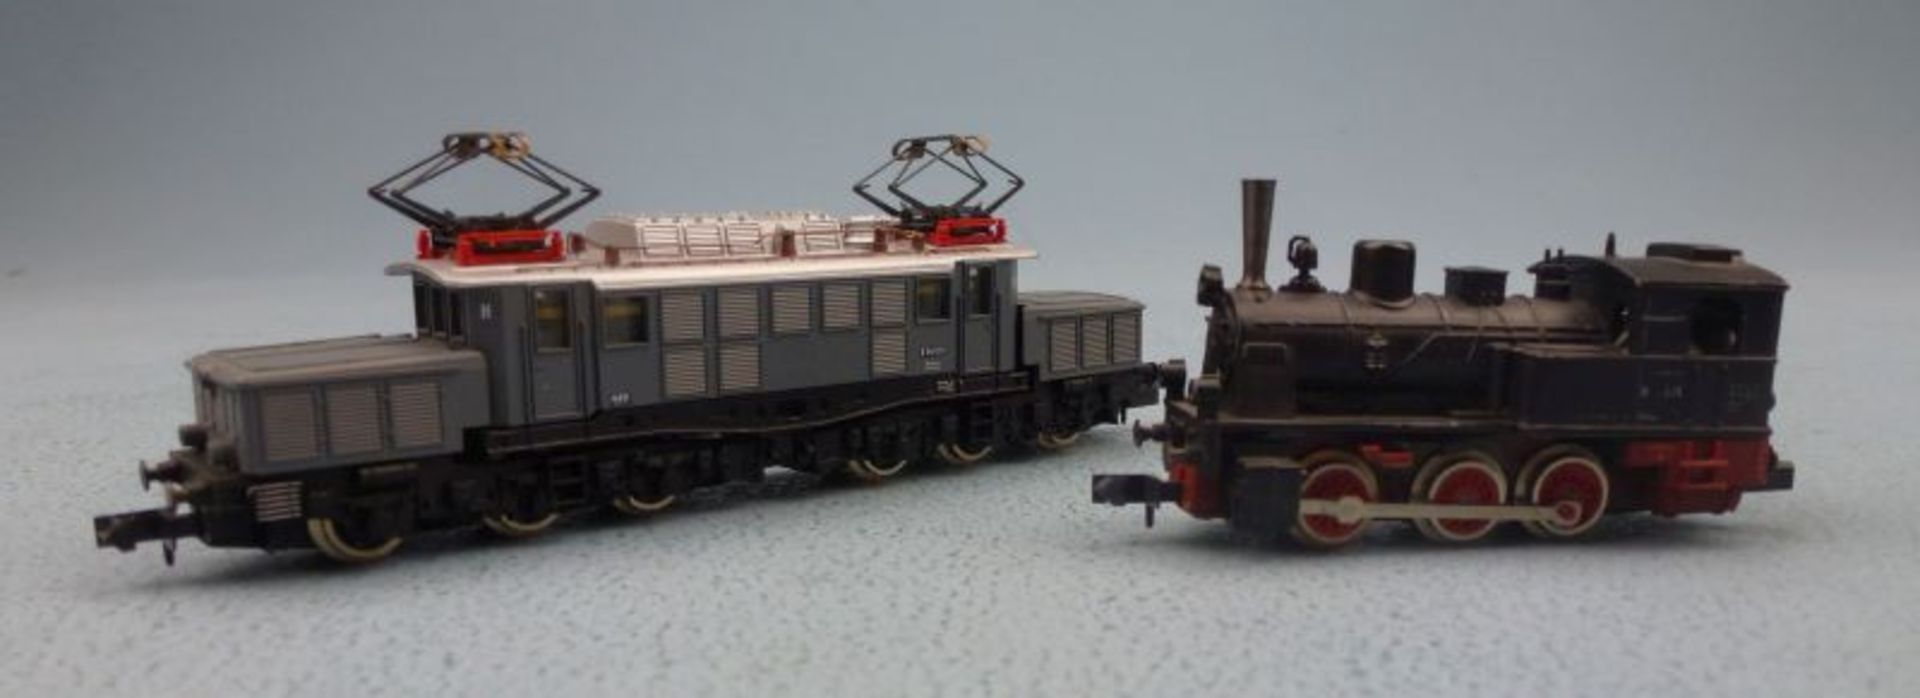 2 Lokomotiven 2310 / 2222, Arnold